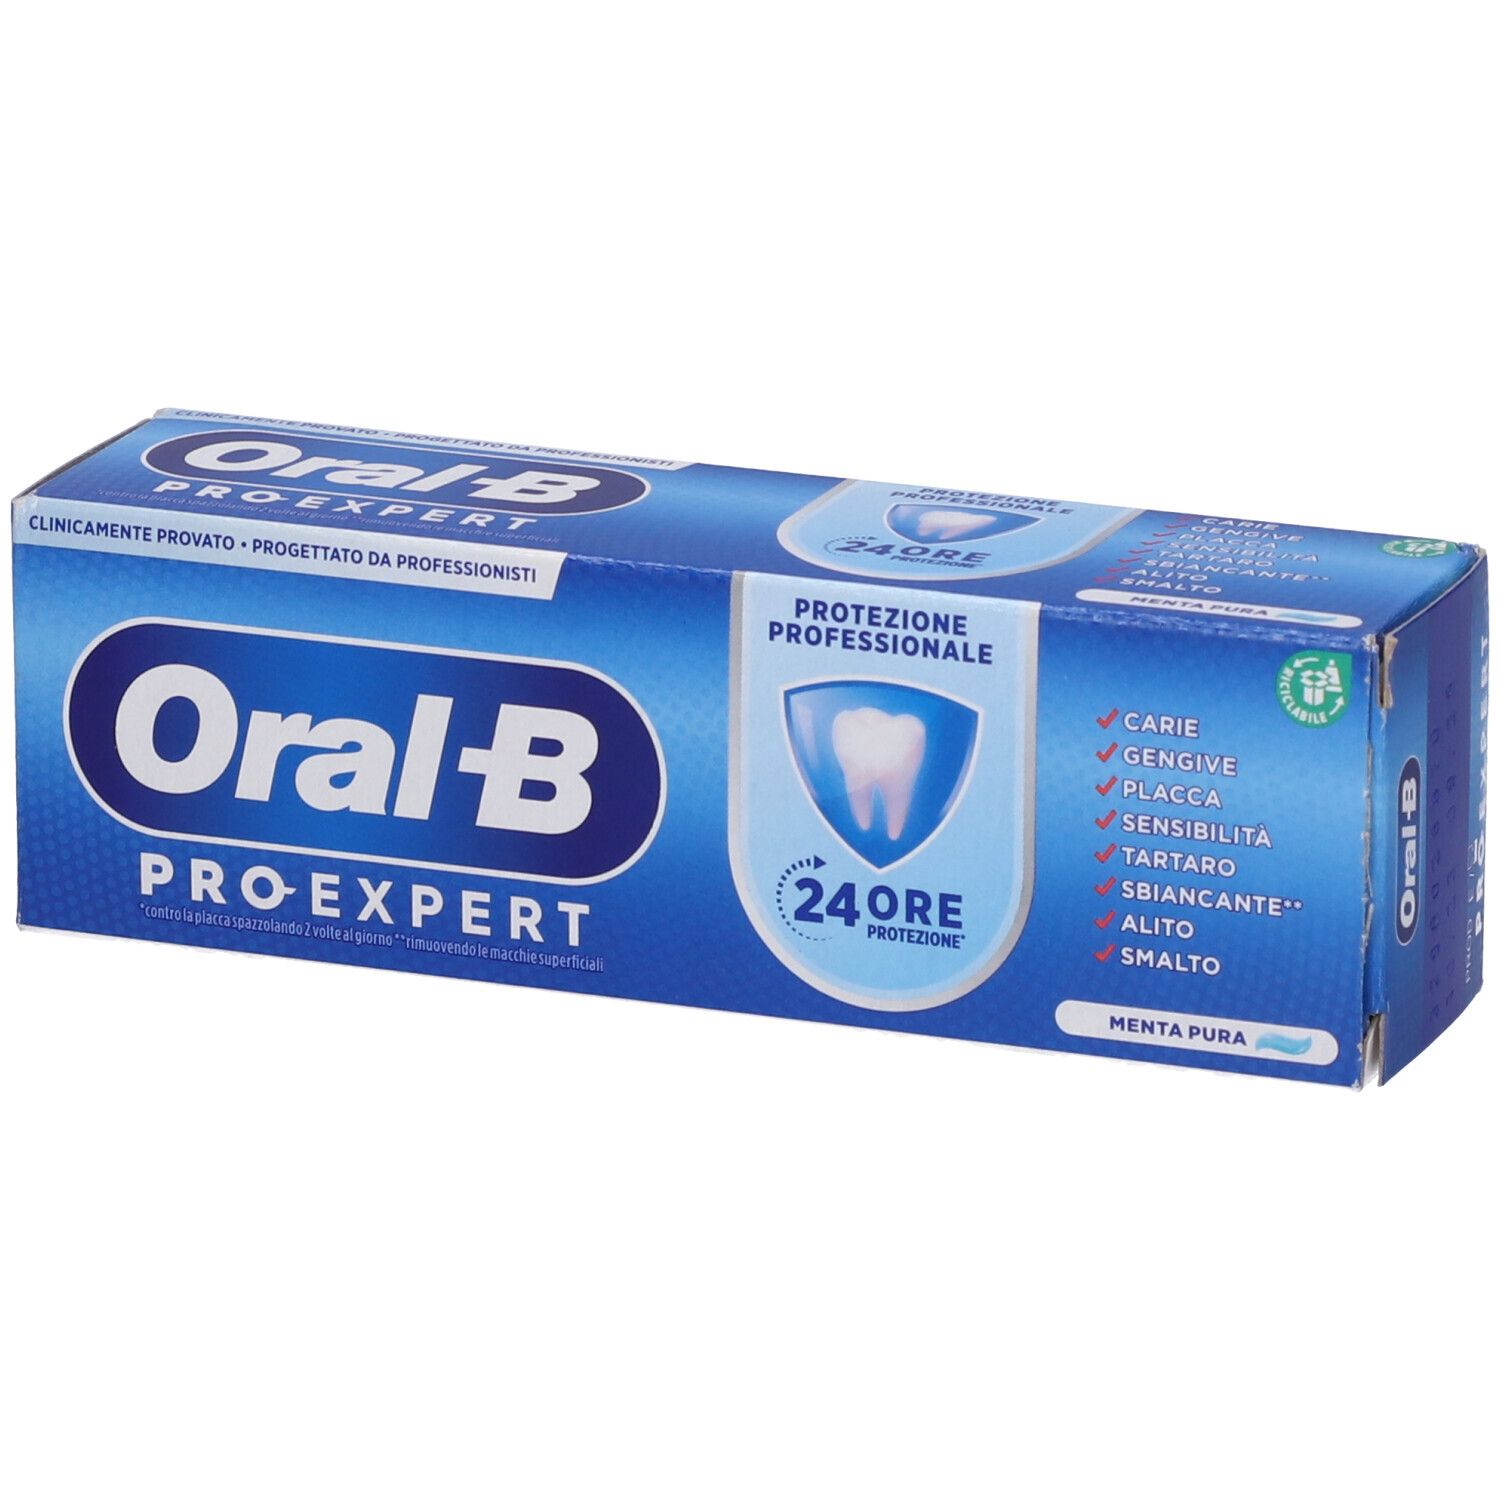 Oral B Proexpert Dentifricio Protezione Profonda